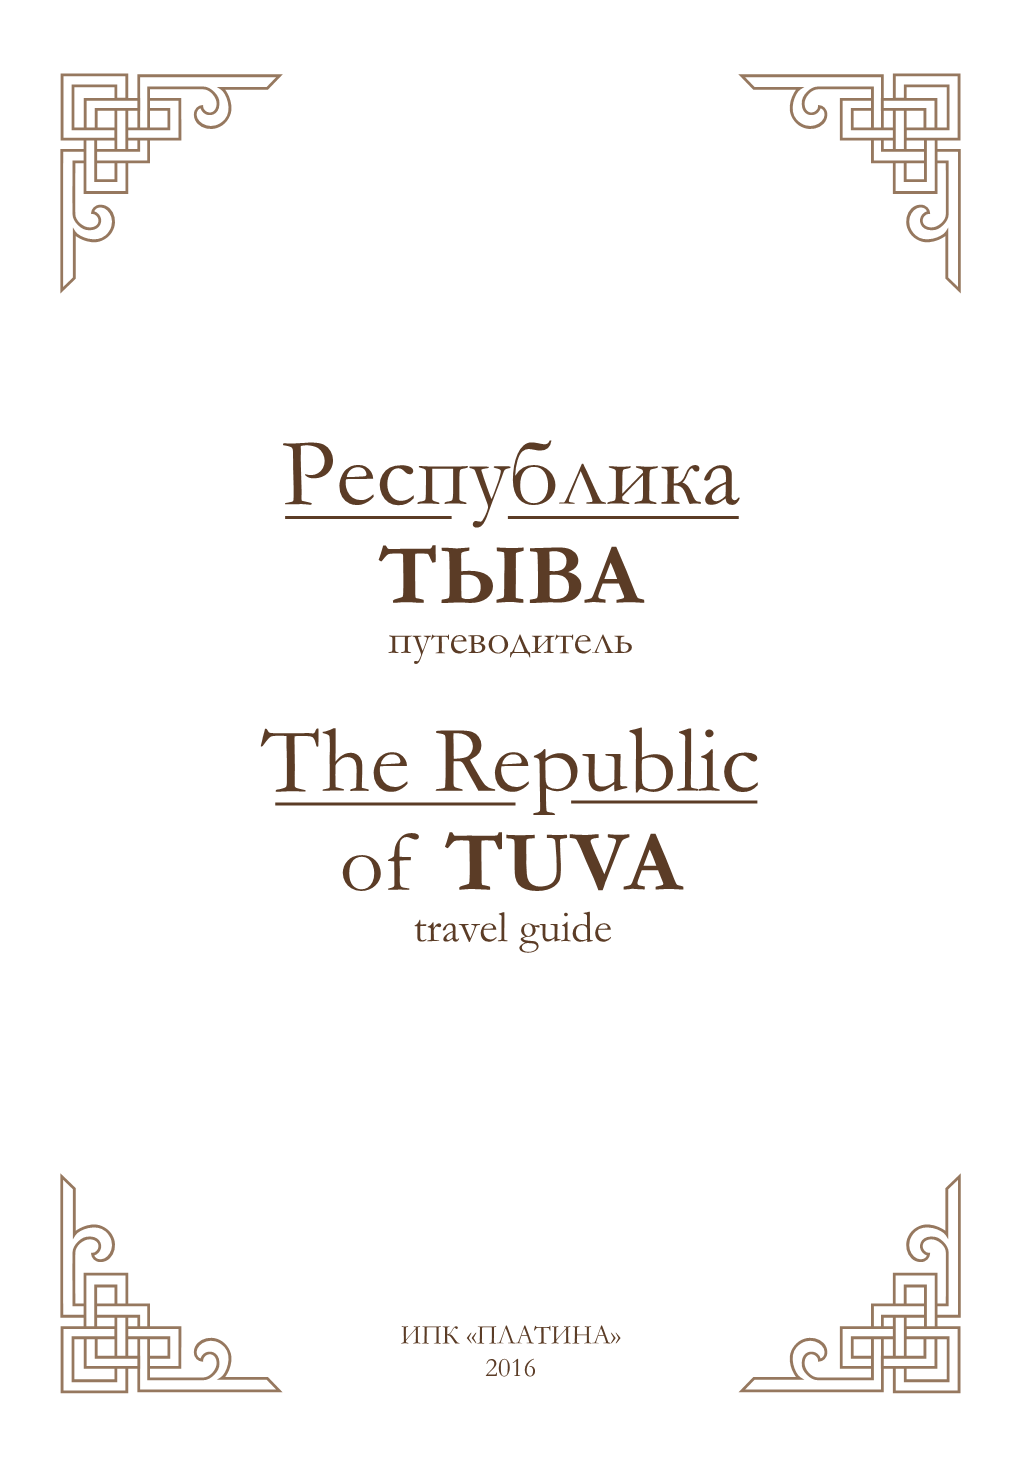 TЫВА Путеводитель the Republic of TUVA Travel Guide